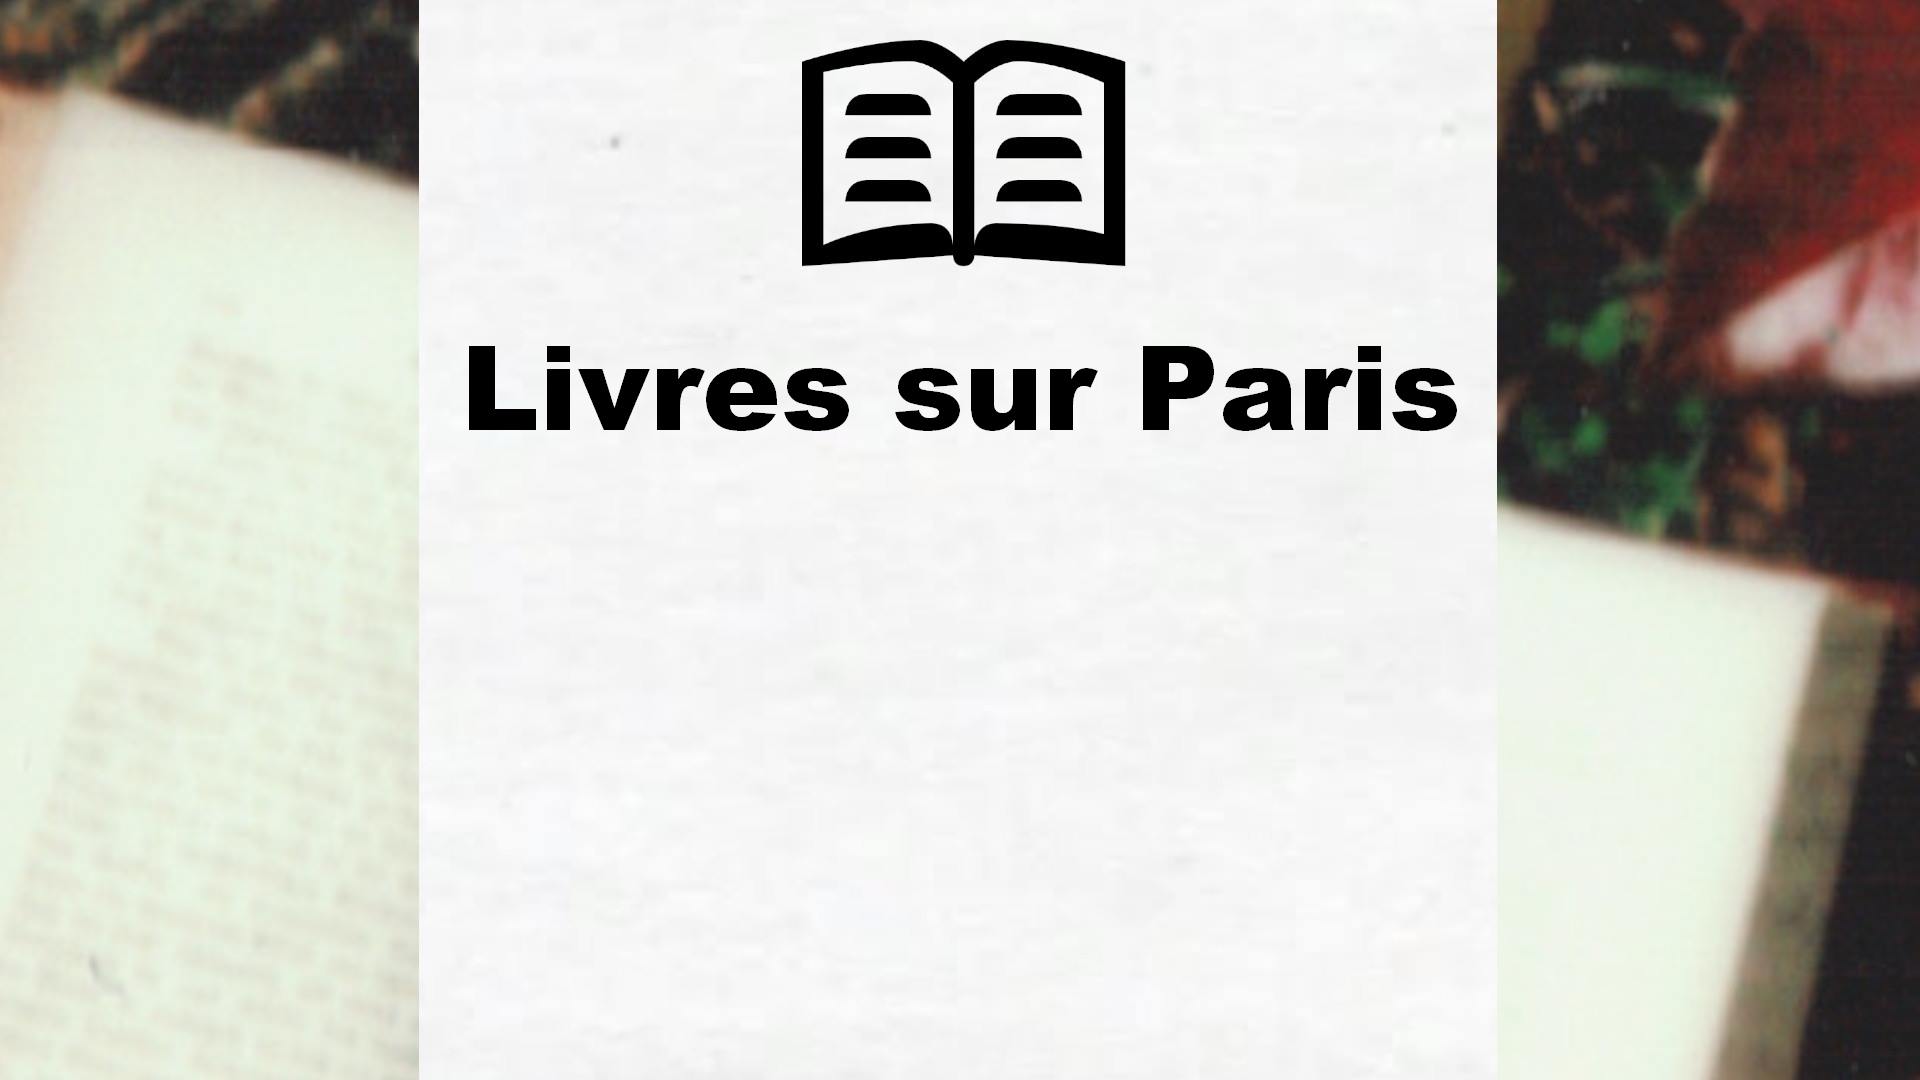 Livres sur Paris